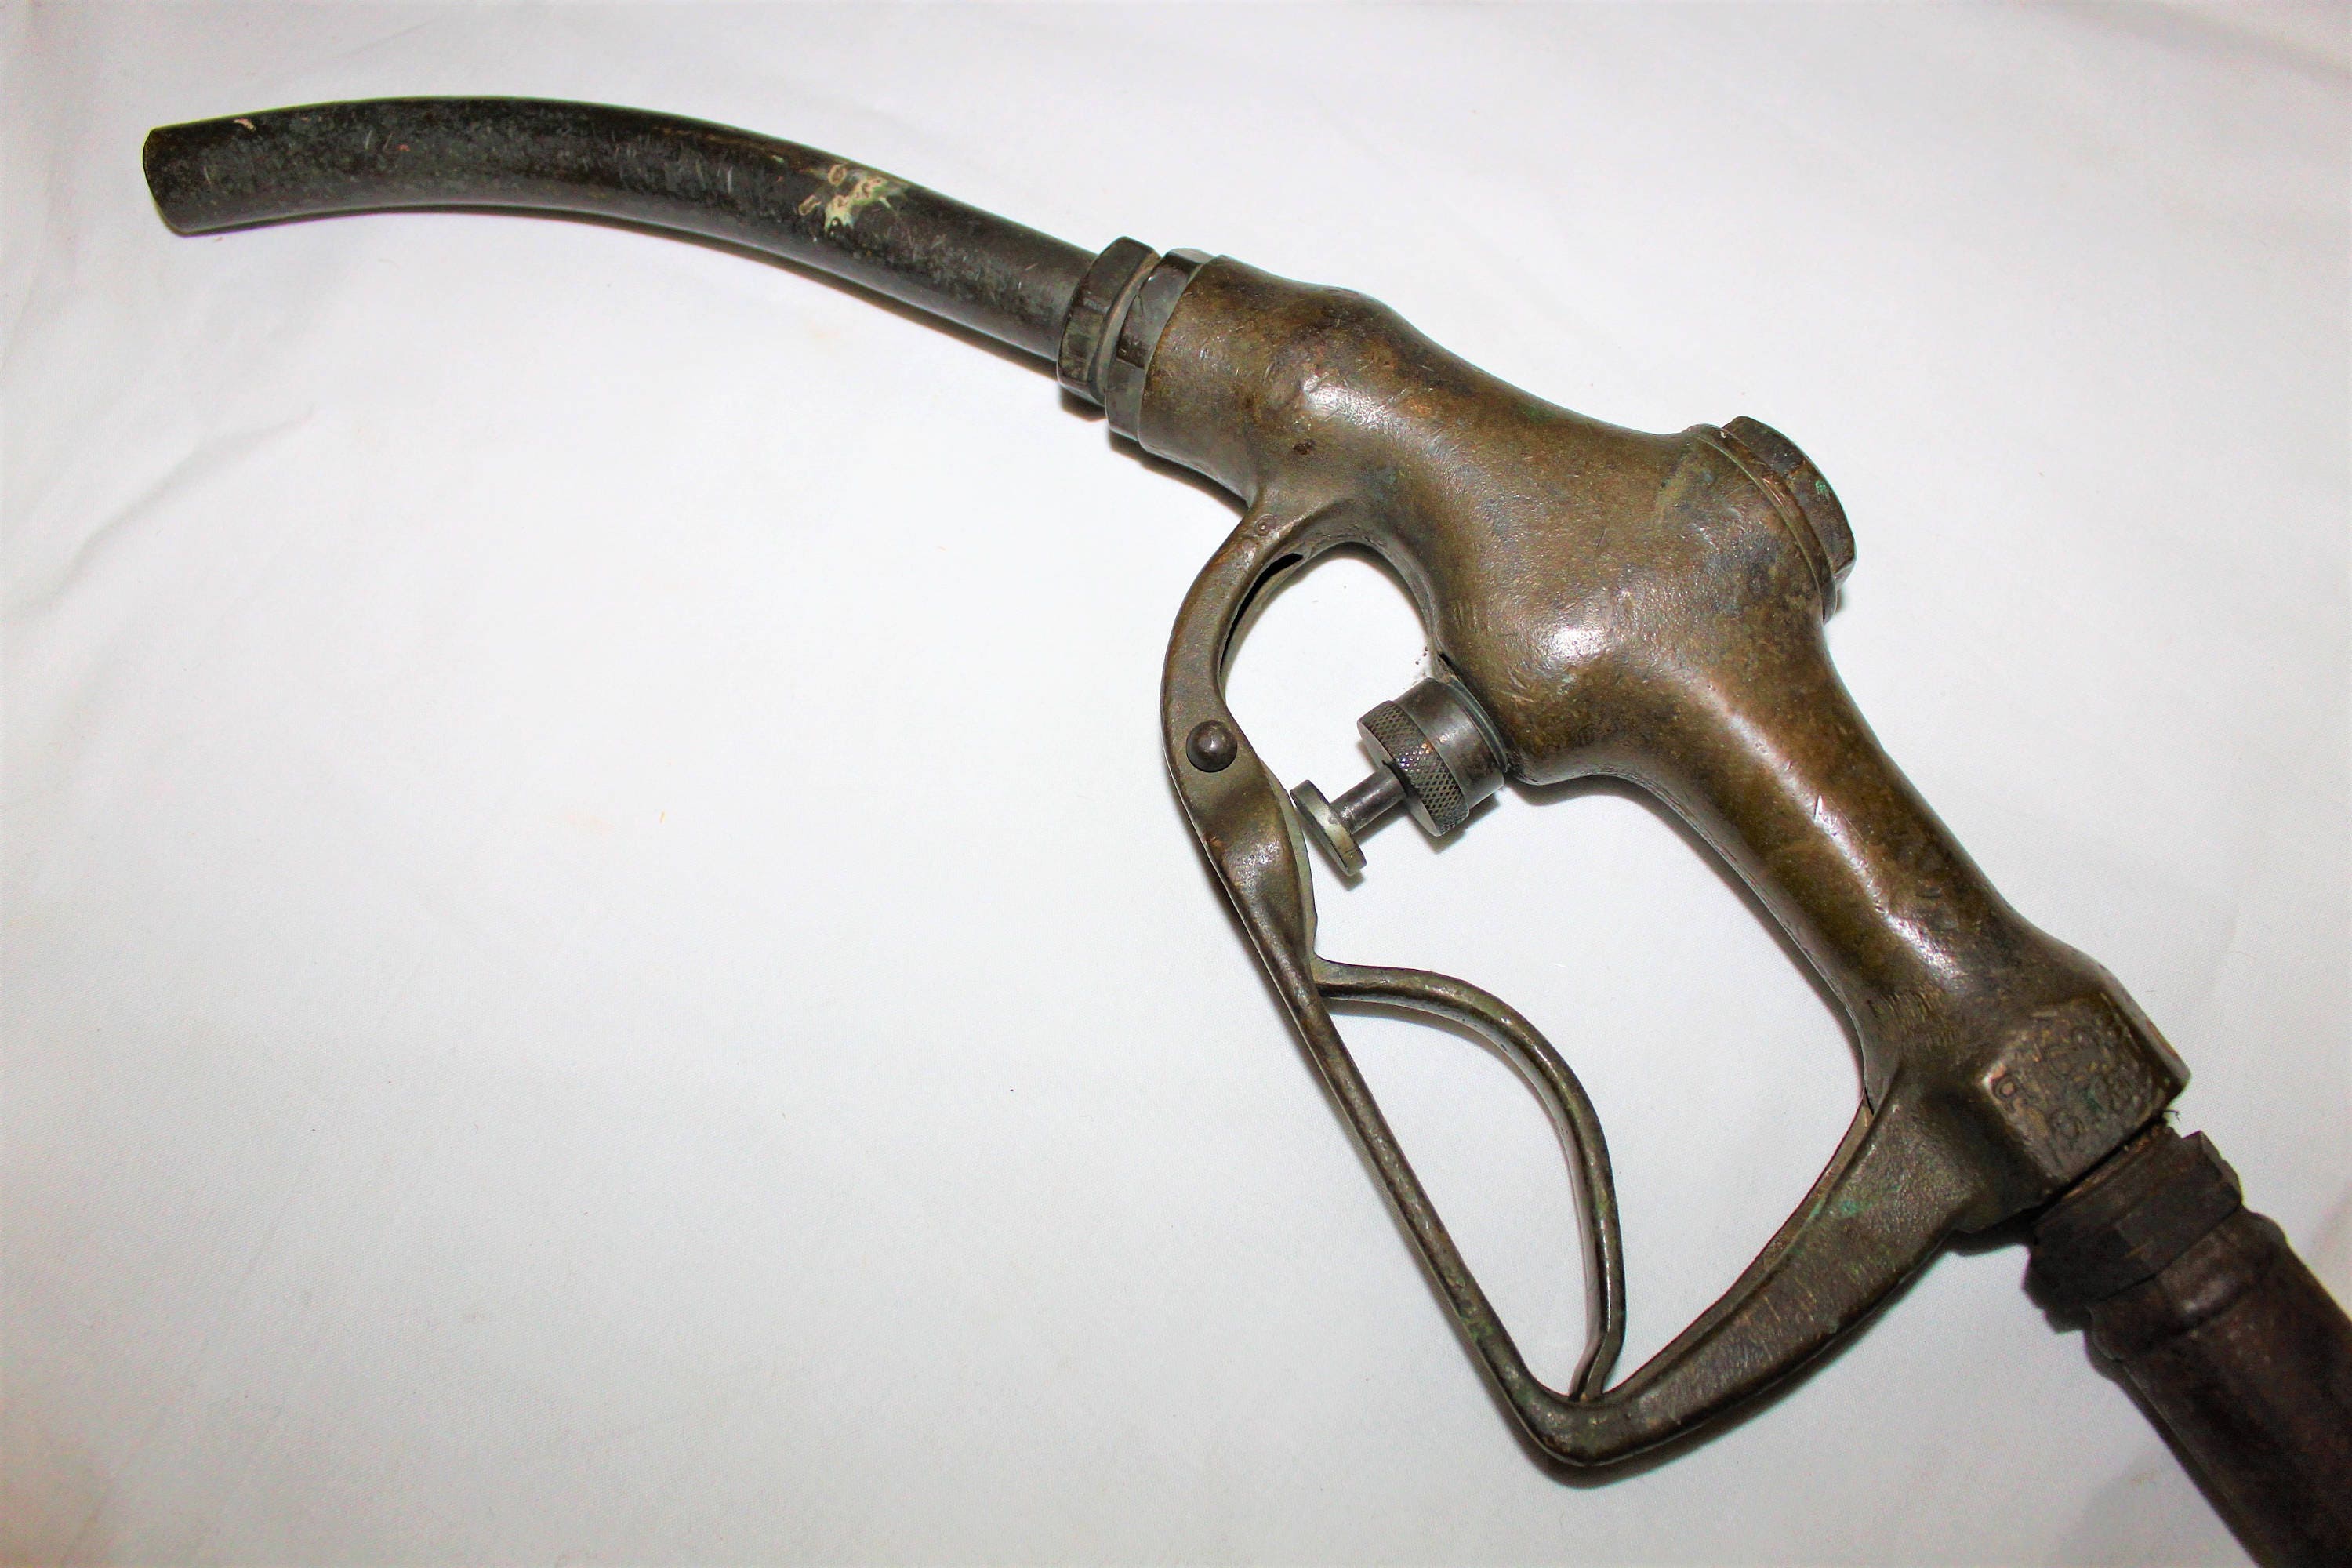 Vintage Gas Pump Nozzle, Buckeye Brass Handle, Gas Pump Nozzle, FIG. 800-B,  1940s, Industrial Brass Handle